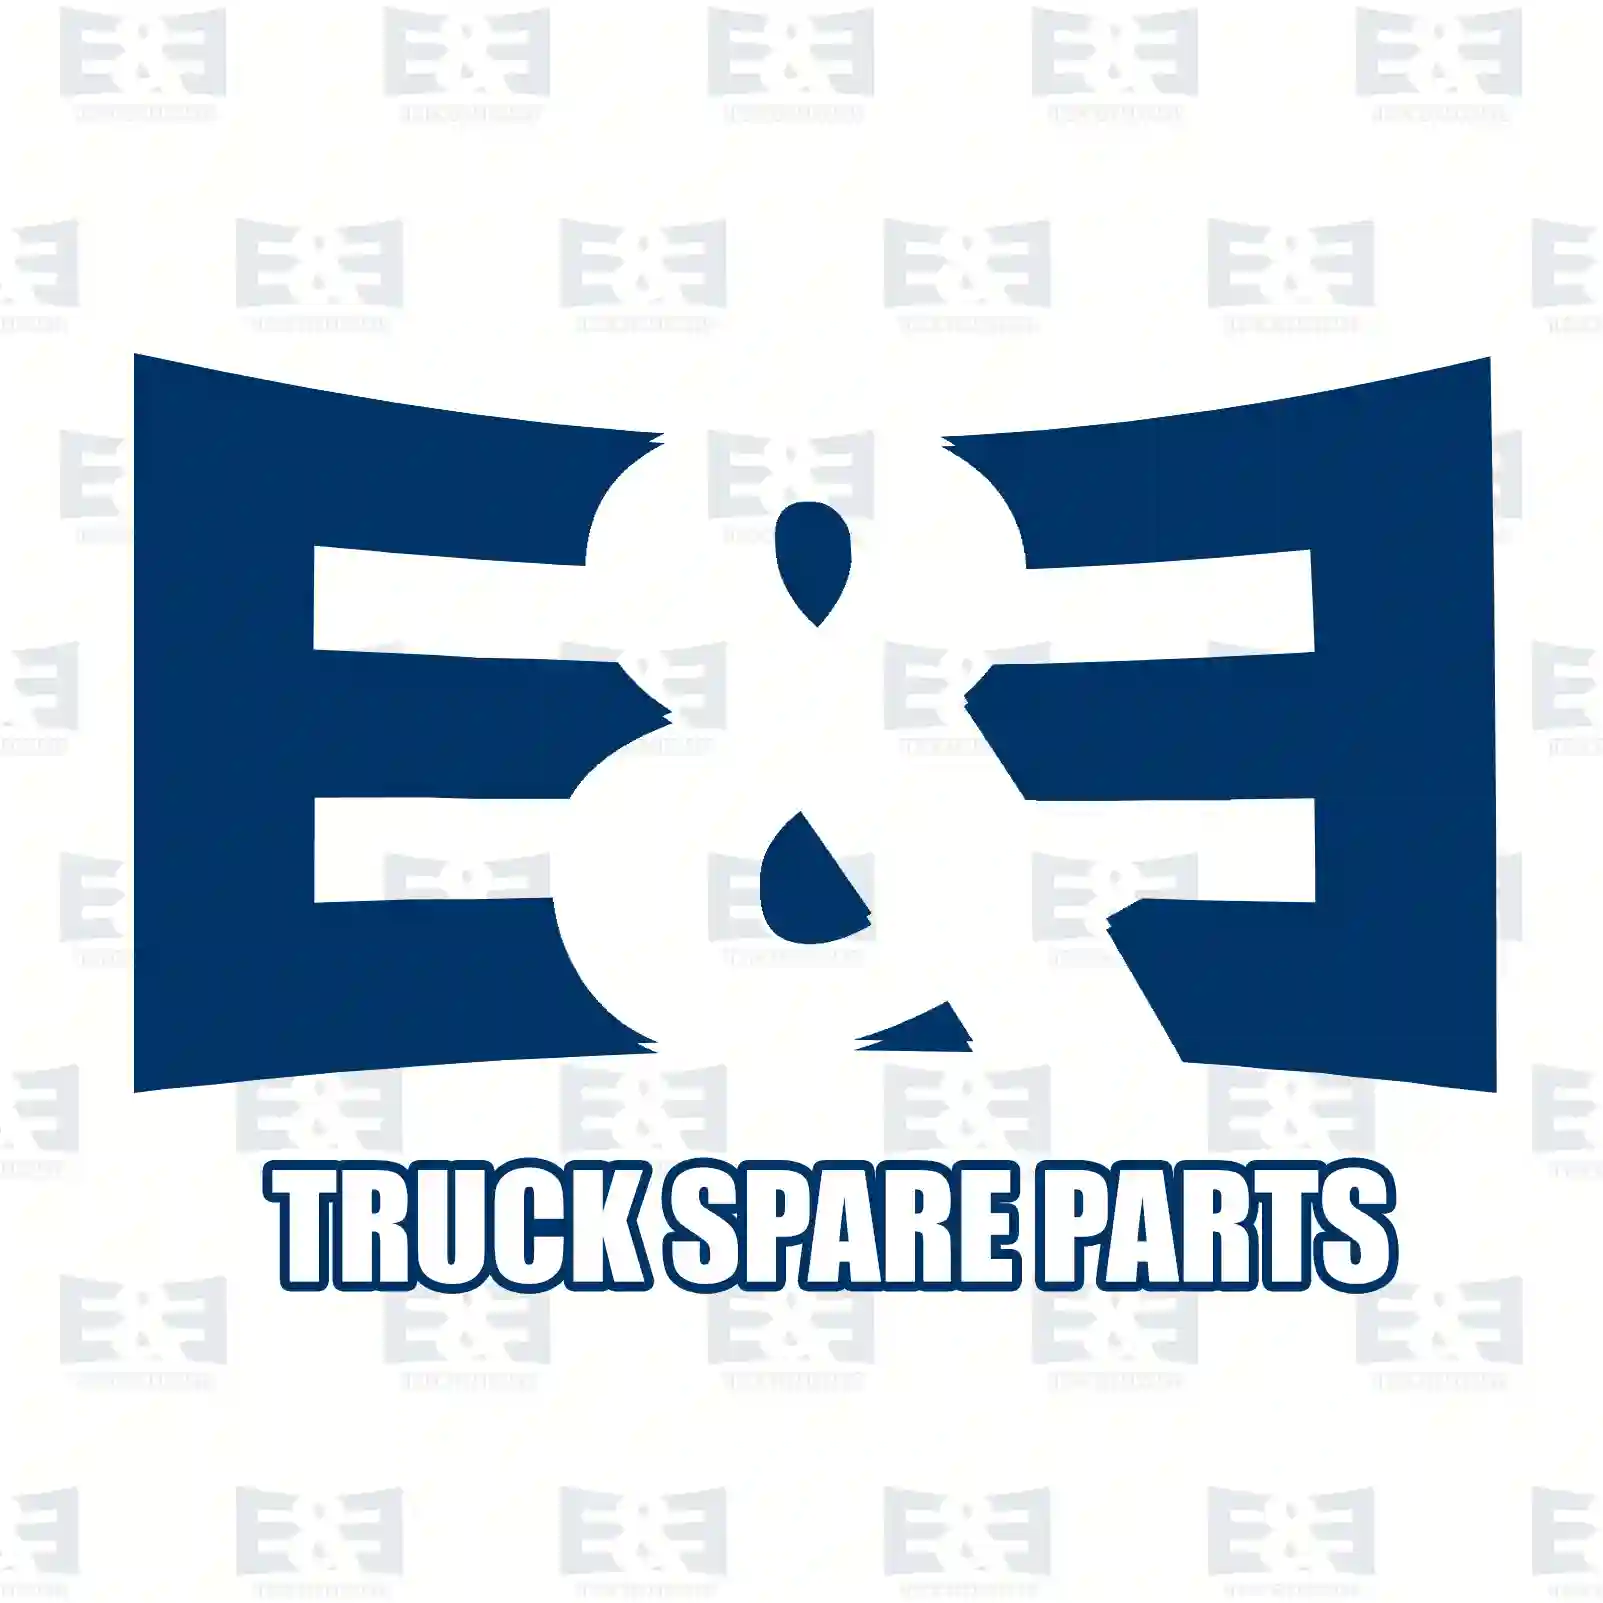 Step, left, upper, 2E2289682, 1310589, 1535035 ||  2E2289682 E&E Truck Spare Parts | Truck Spare Parts, Auotomotive Spare Parts Step, left, upper, 2E2289682, 1310589, 1535035 ||  2E2289682 E&E Truck Spare Parts | Truck Spare Parts, Auotomotive Spare Parts